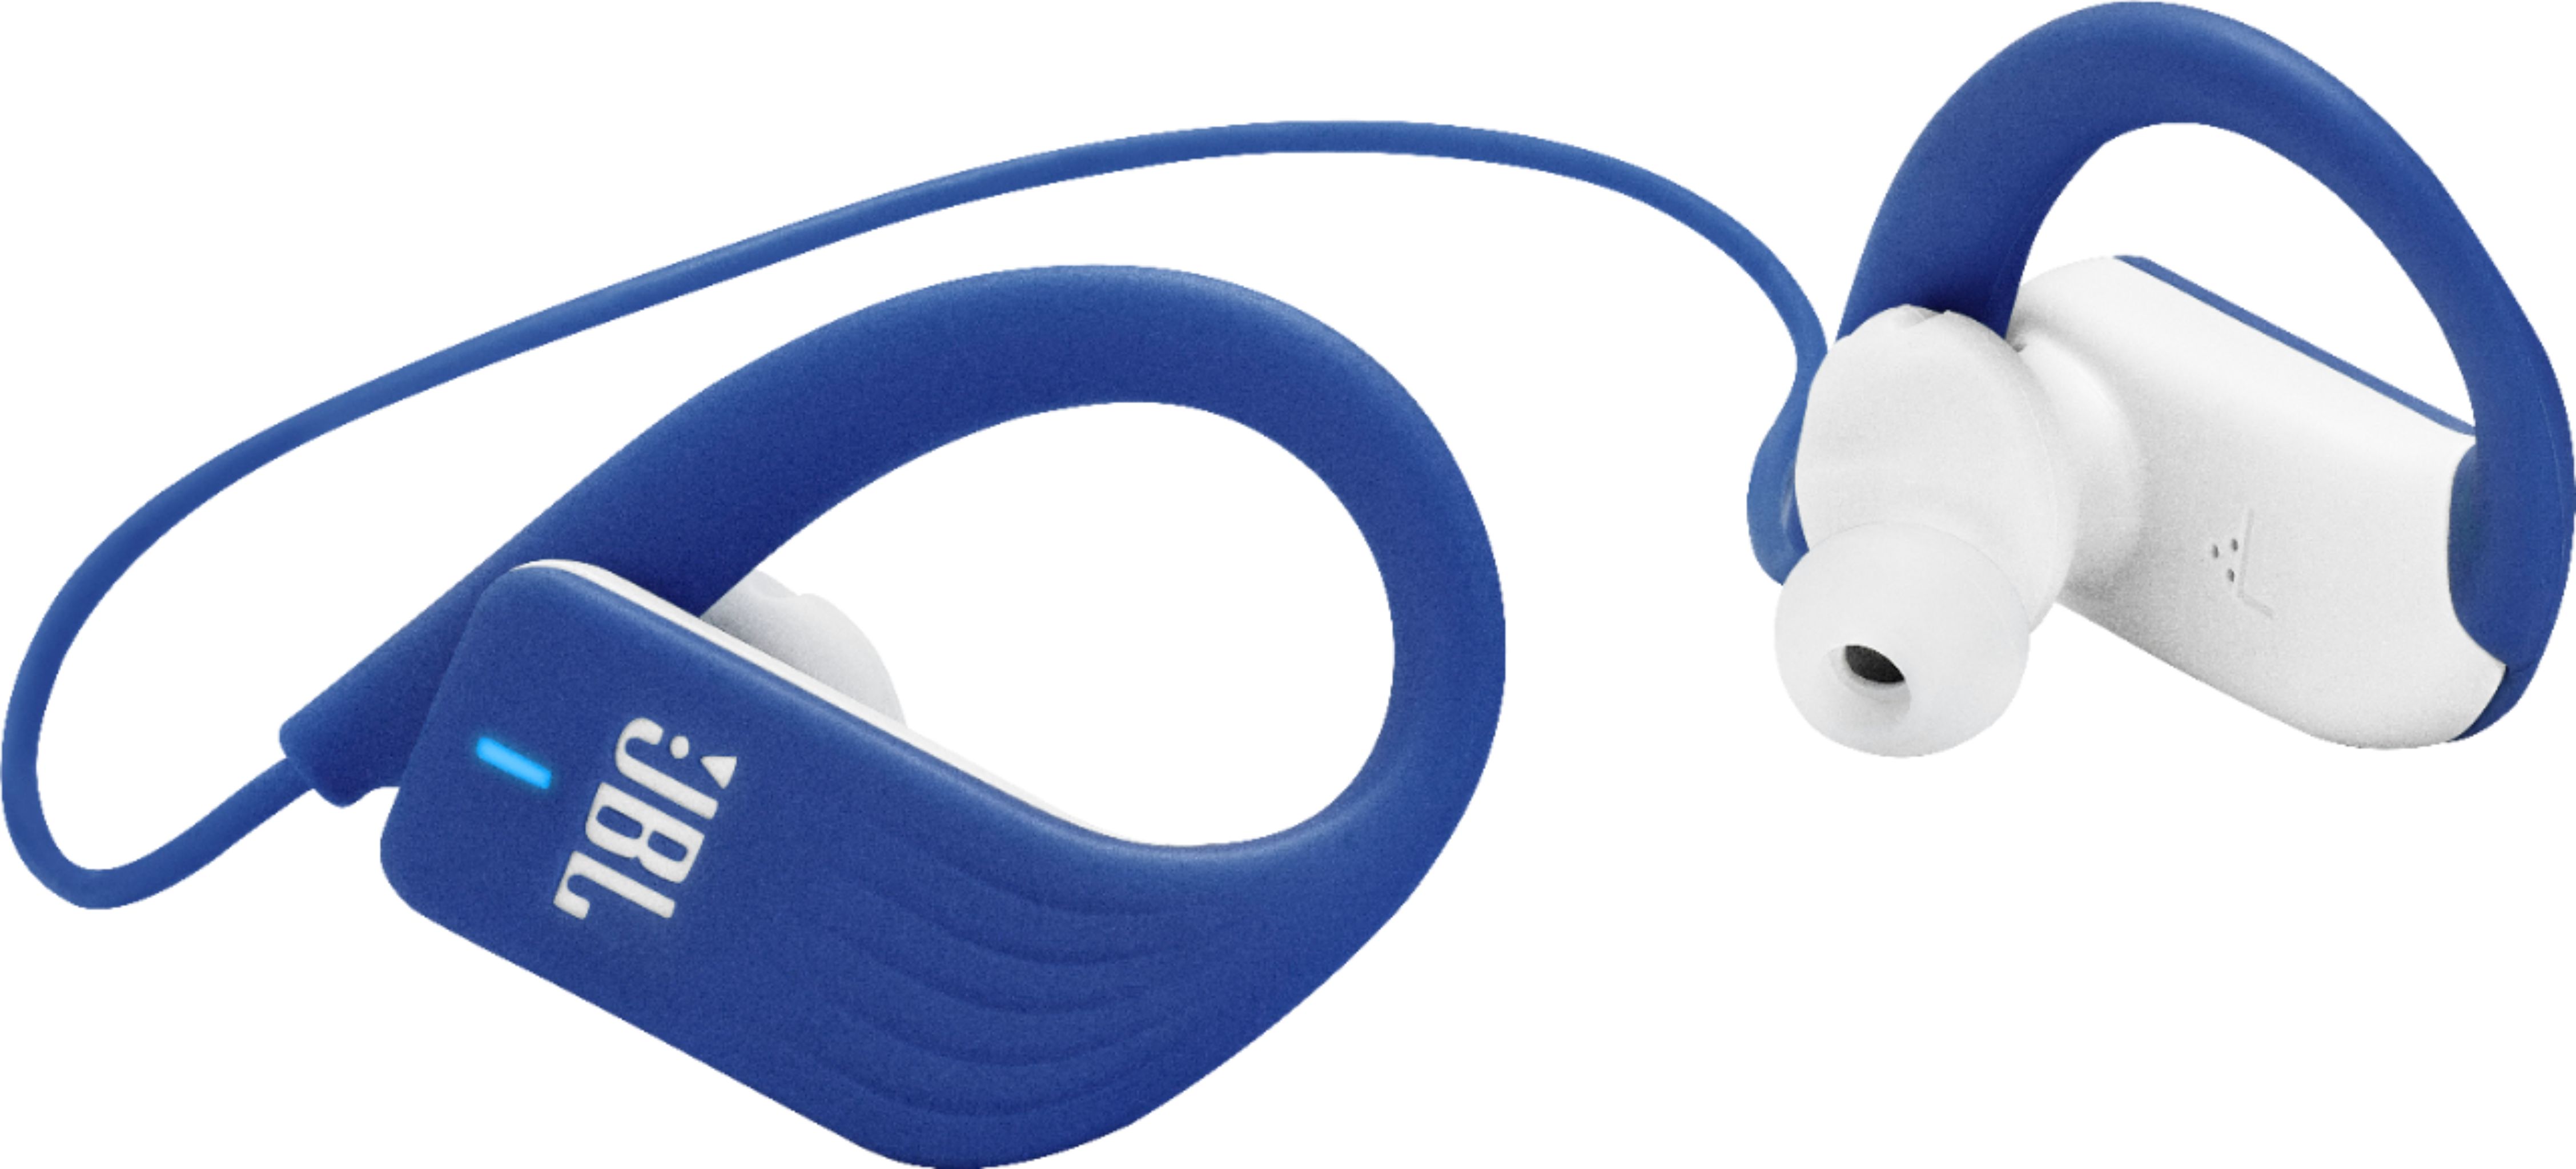 JBL Endurance Sprint Wireless In-Ear Headphones Blue  - Best Buy